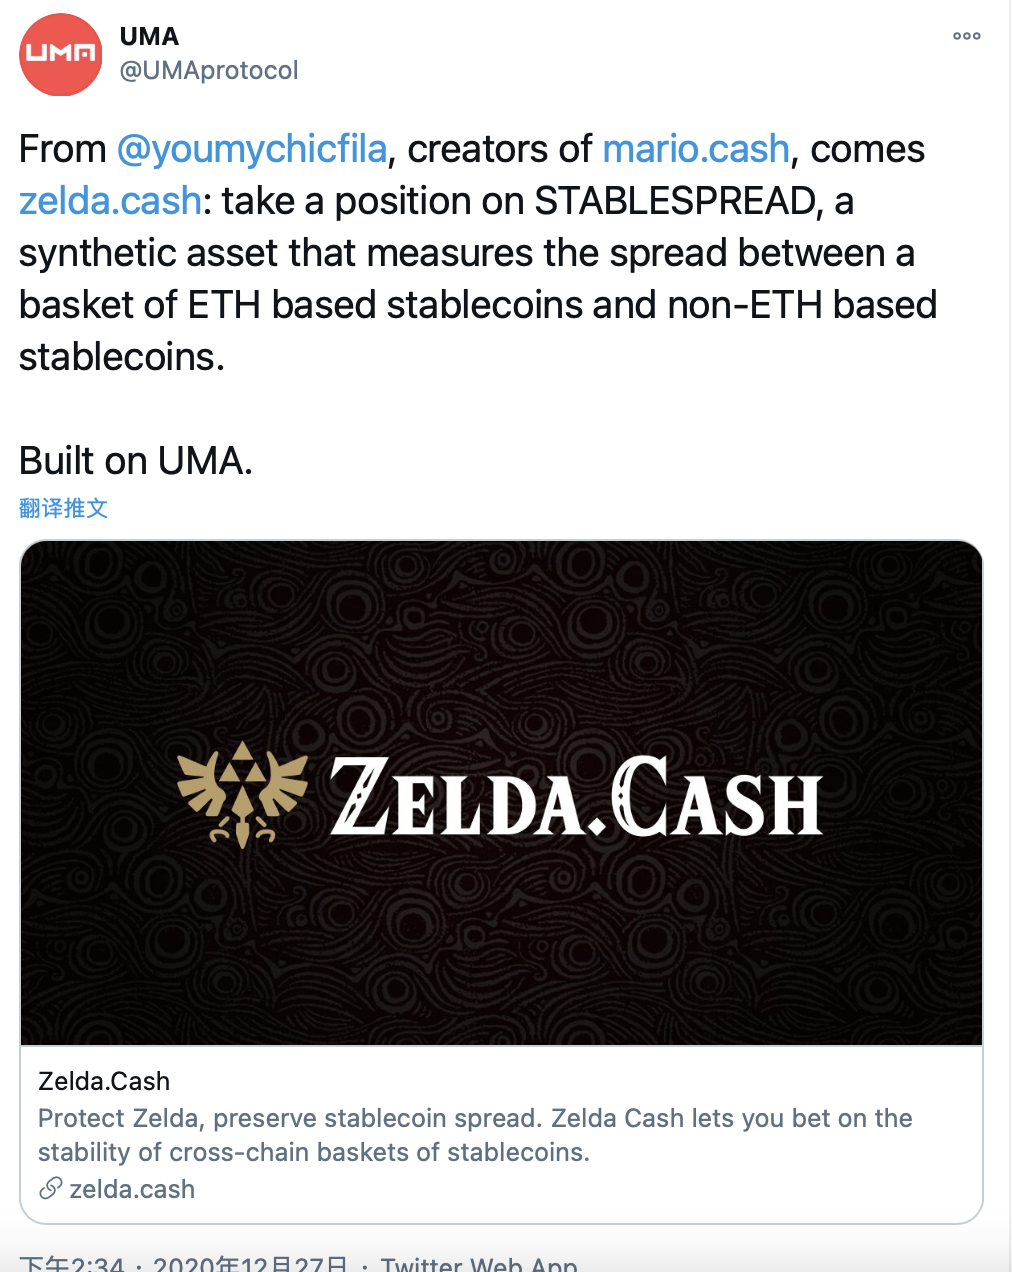 基于UMA创建的合成代币项目Zelda Cash启动-宏链财经